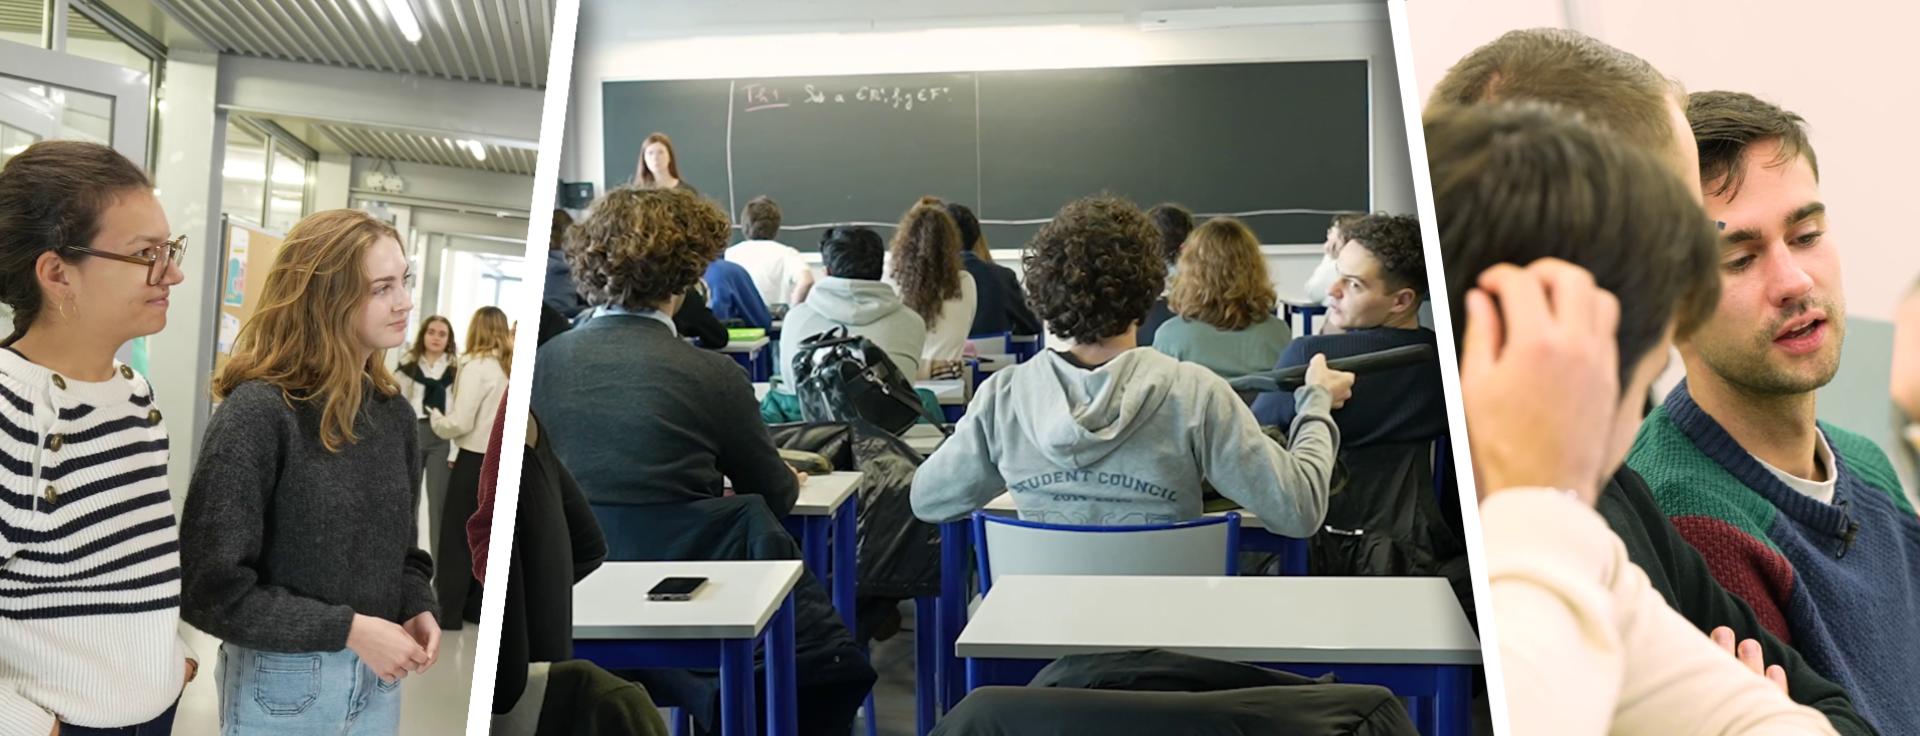 Vidéo : une journée à l'ENSAE Paris pour découvrir ses cours, ses débouchés et sa vie étudiante